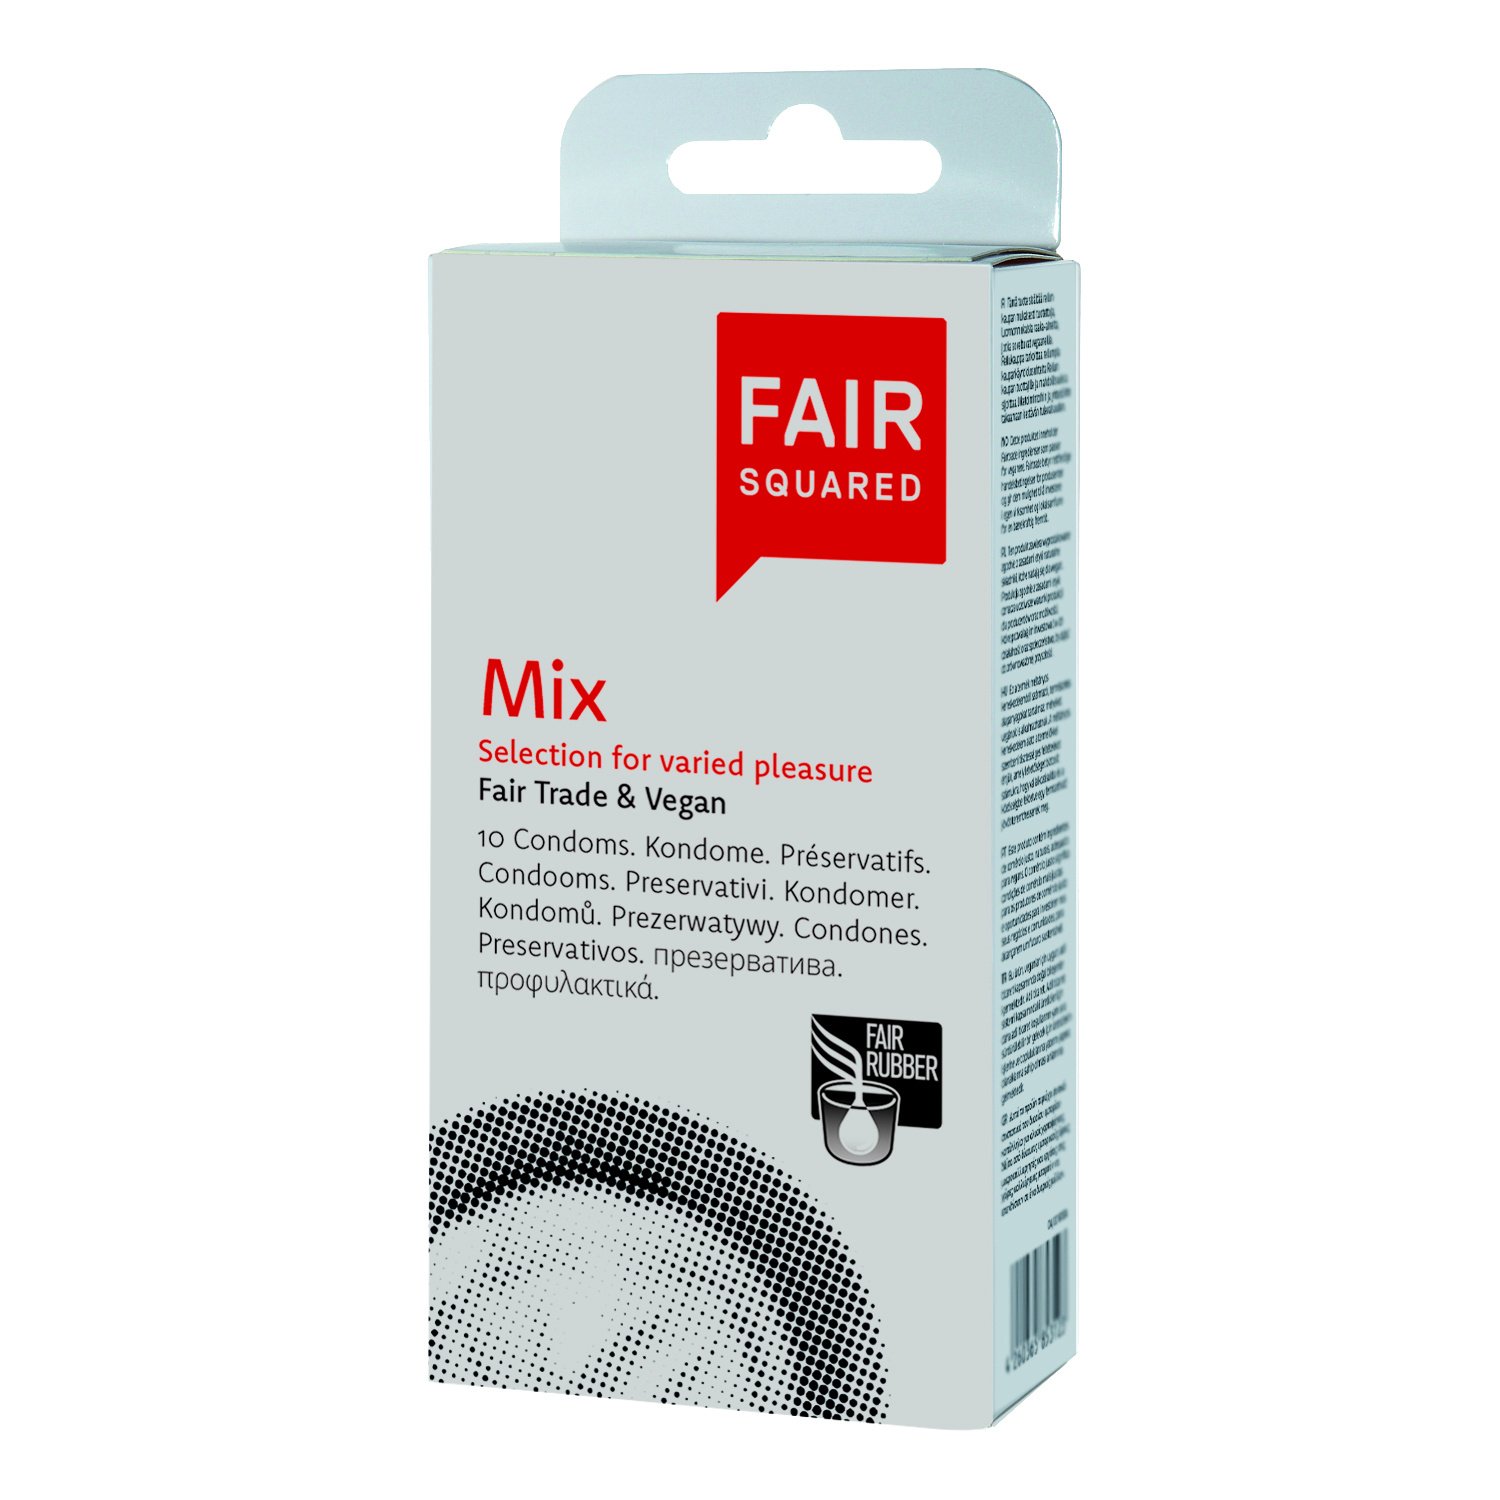 Fair Squared Mix 10 Condooms